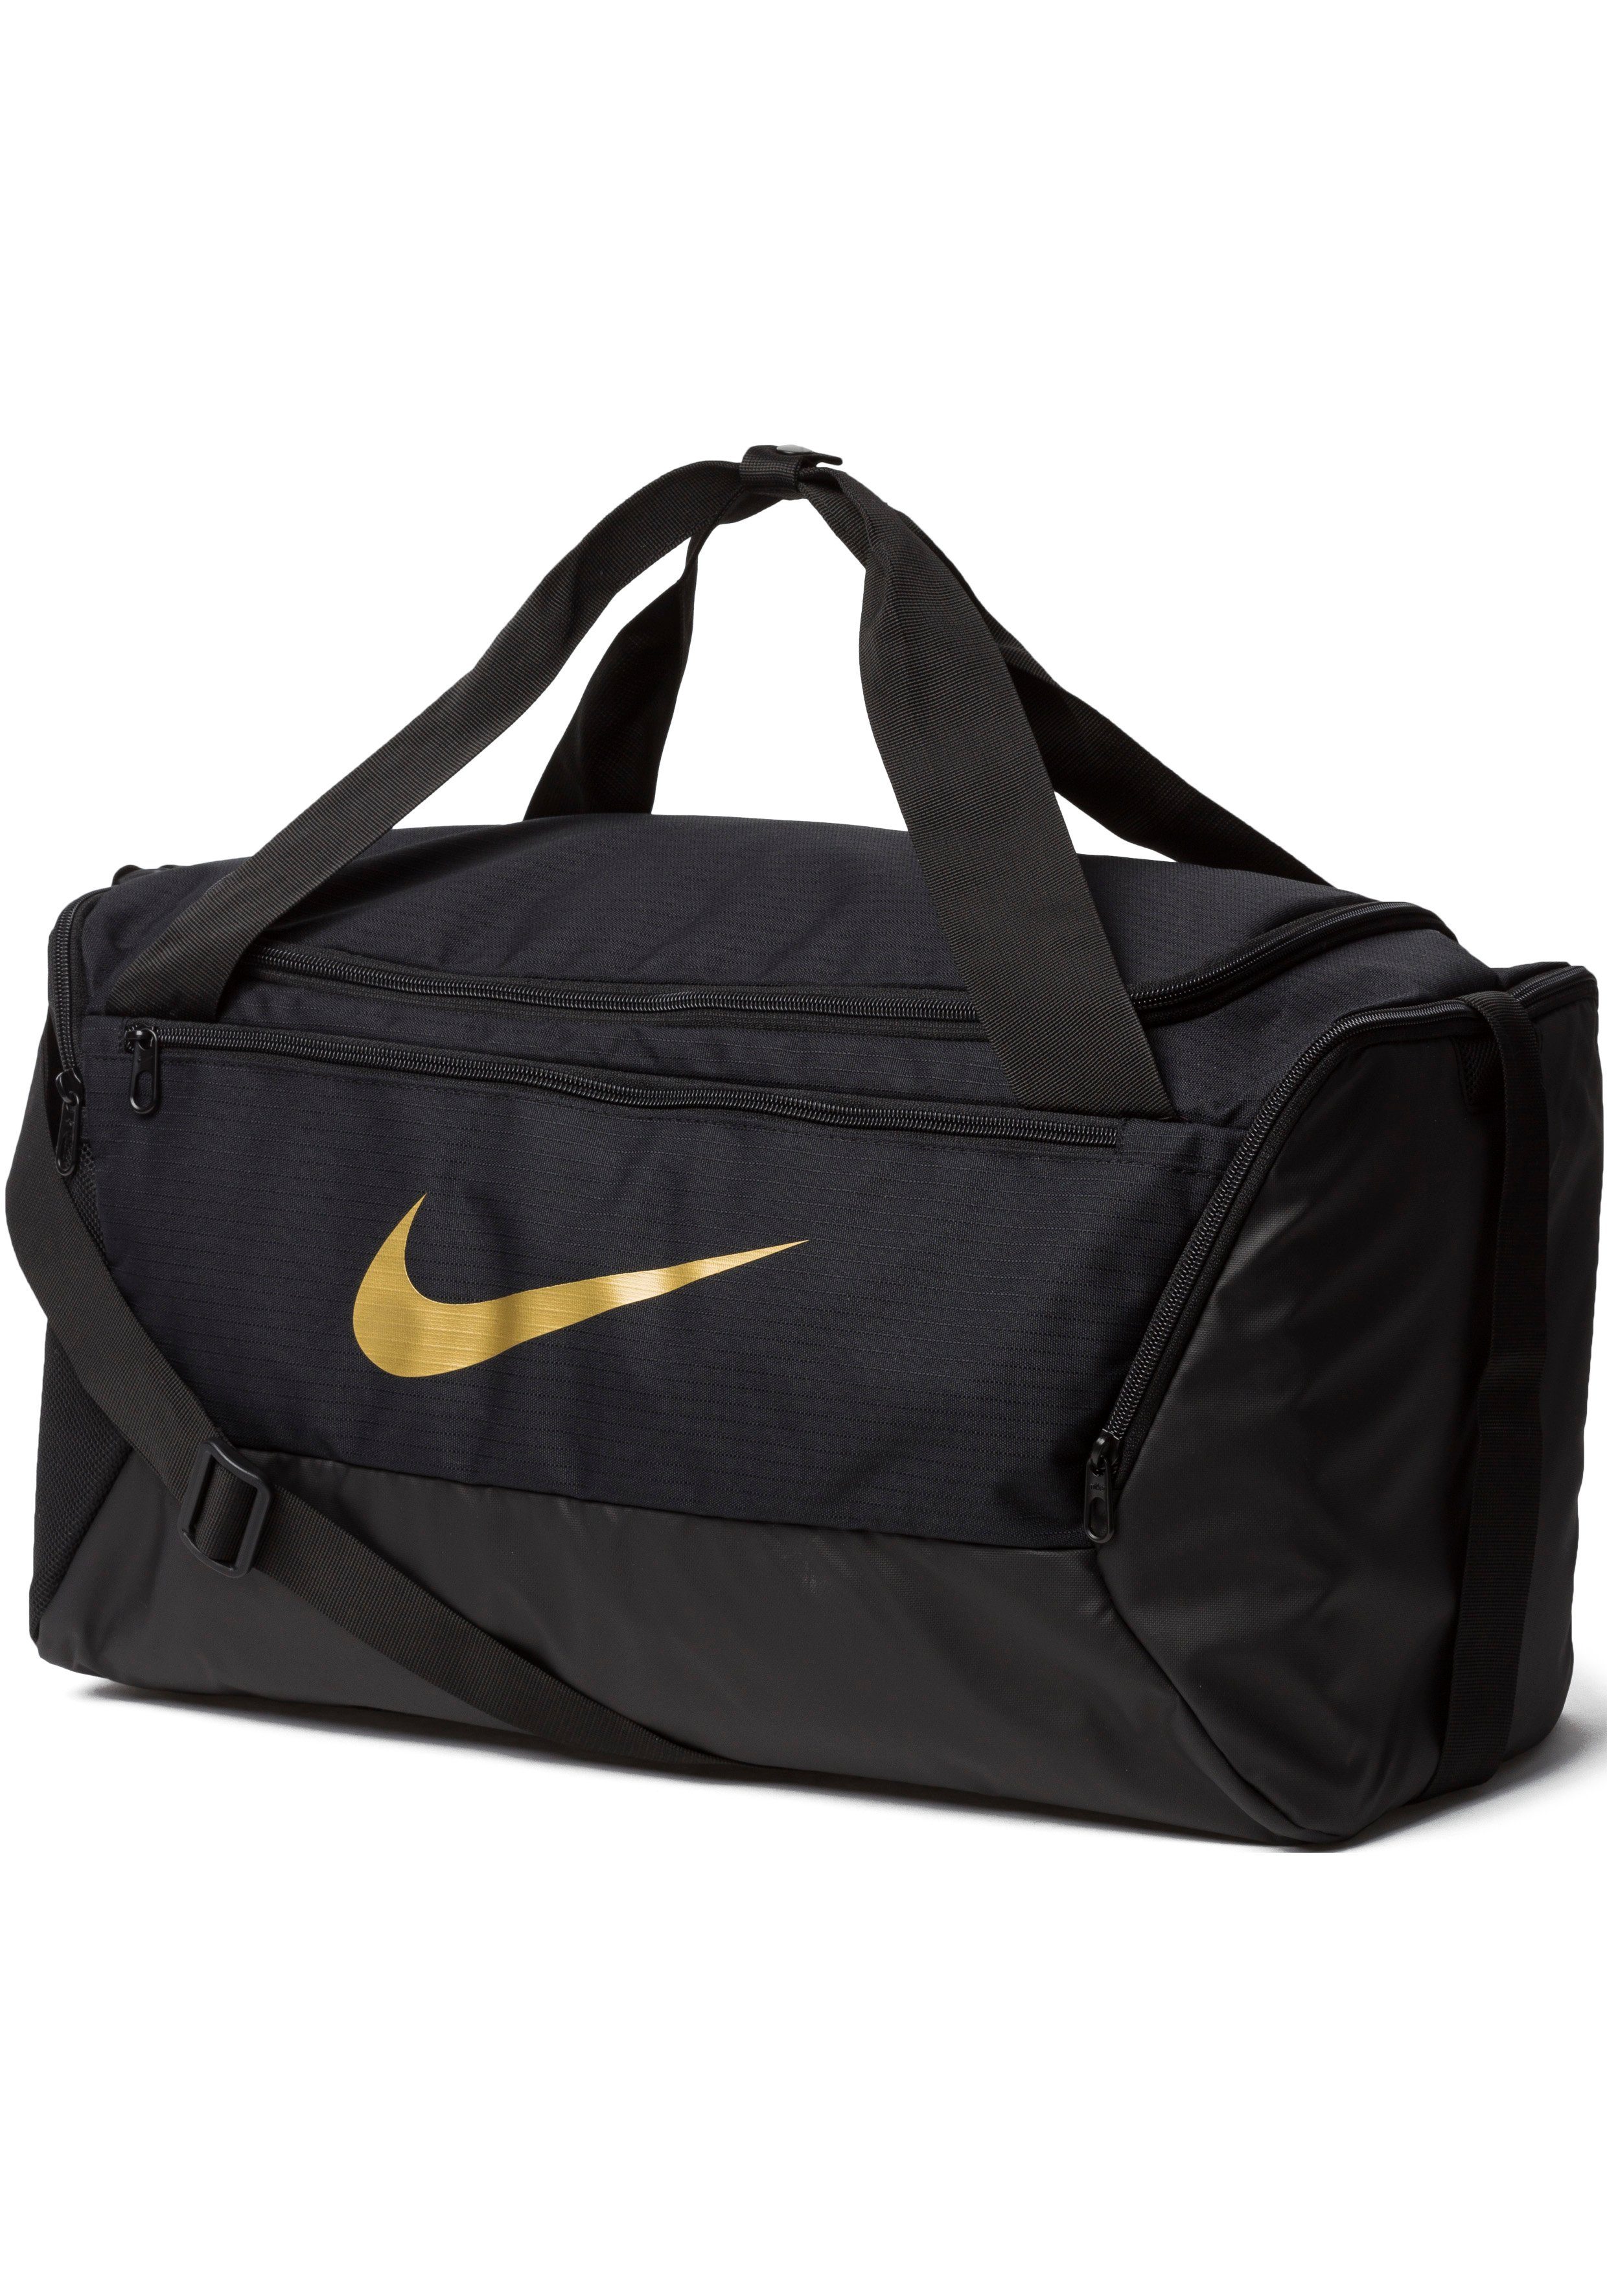 Nike Sporttaschen Herren & Trainingstasche online kaufen | OTTO